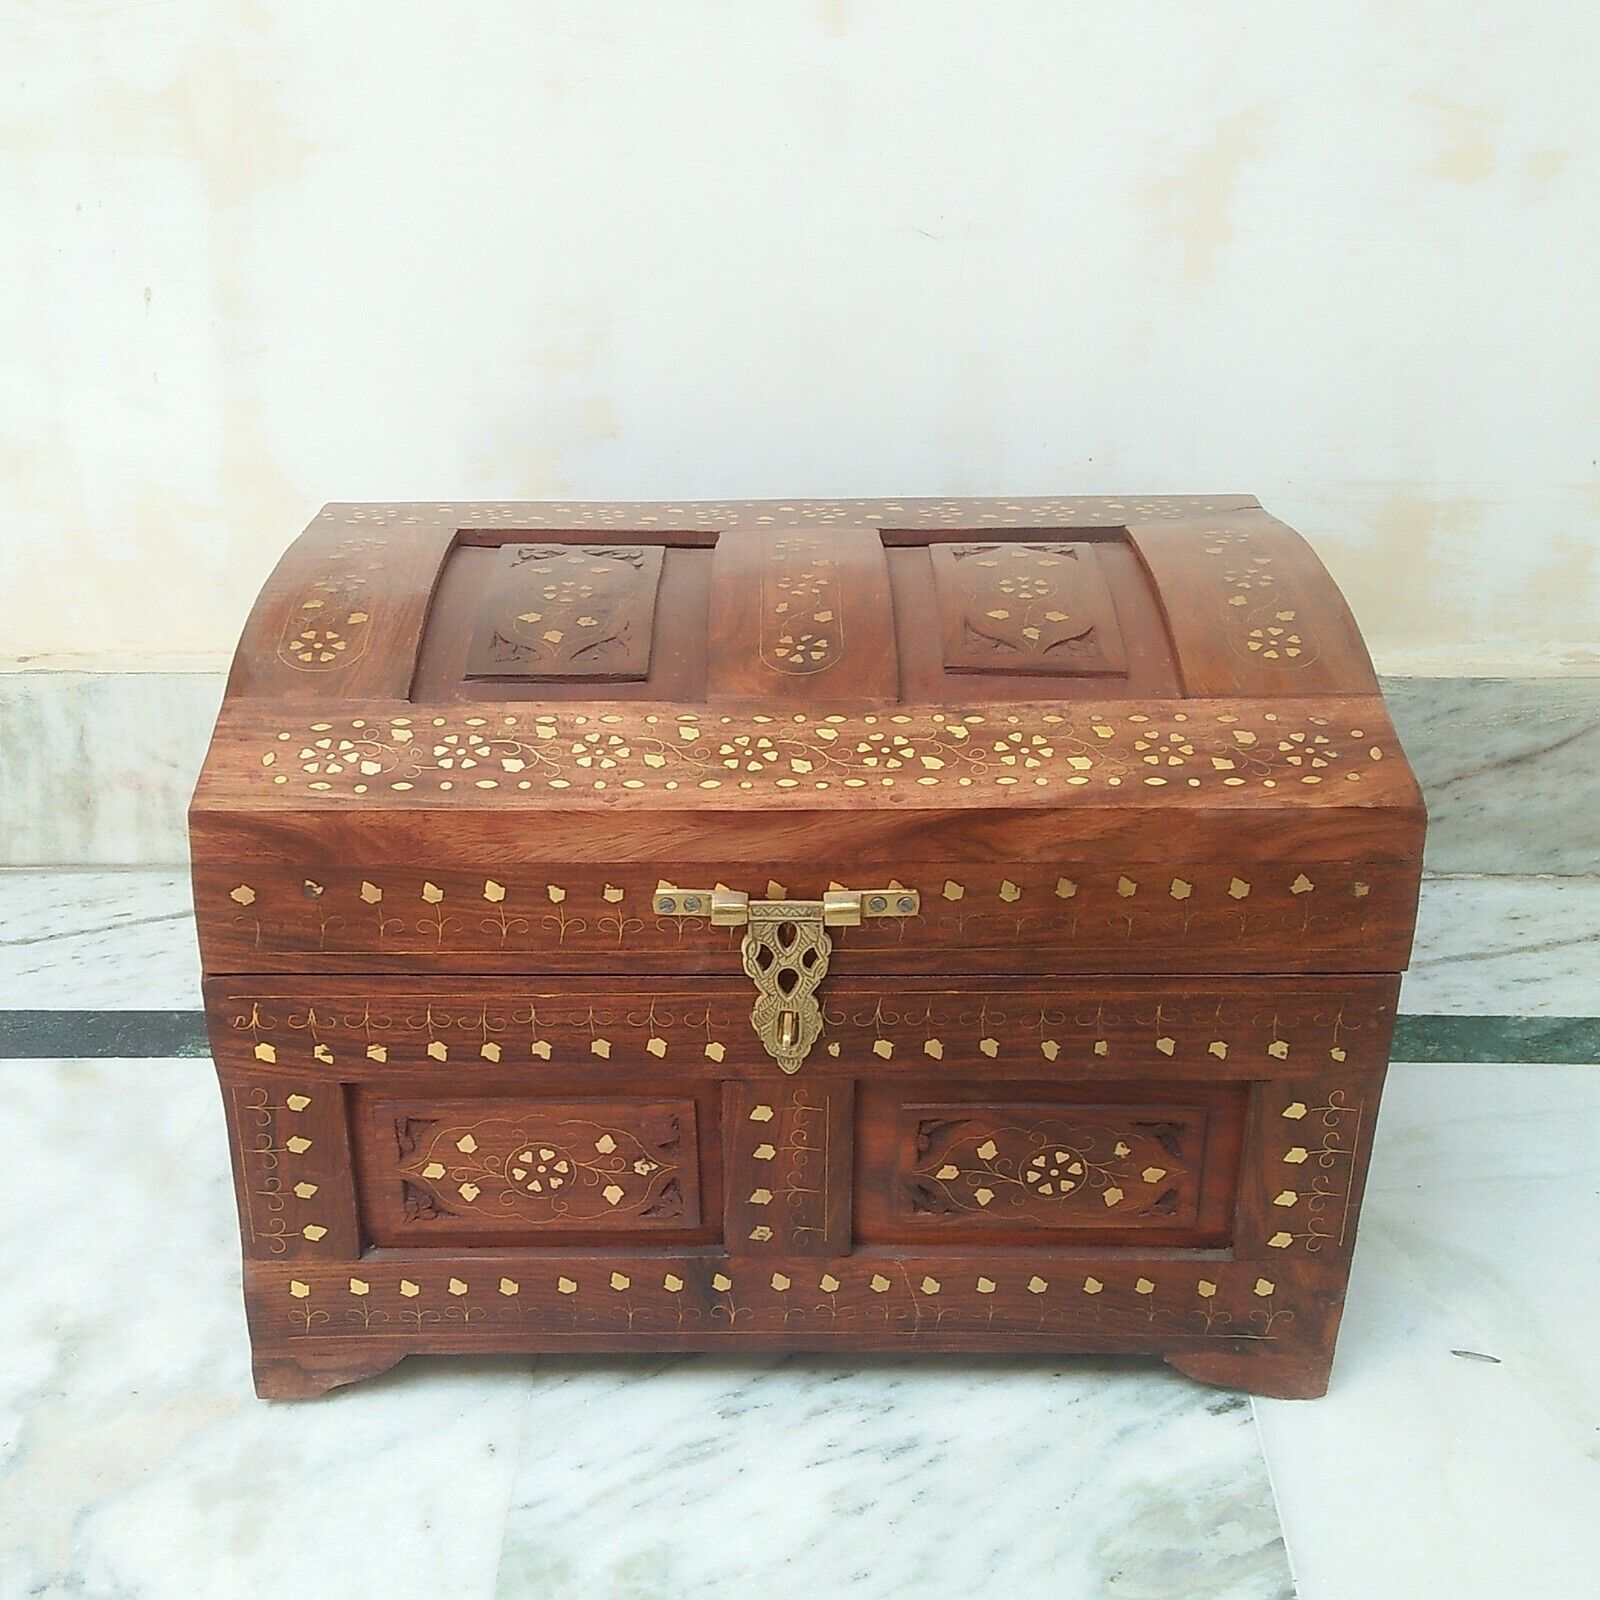 Wooden Chest Box Treasure Pirate Collectible Home Decorative